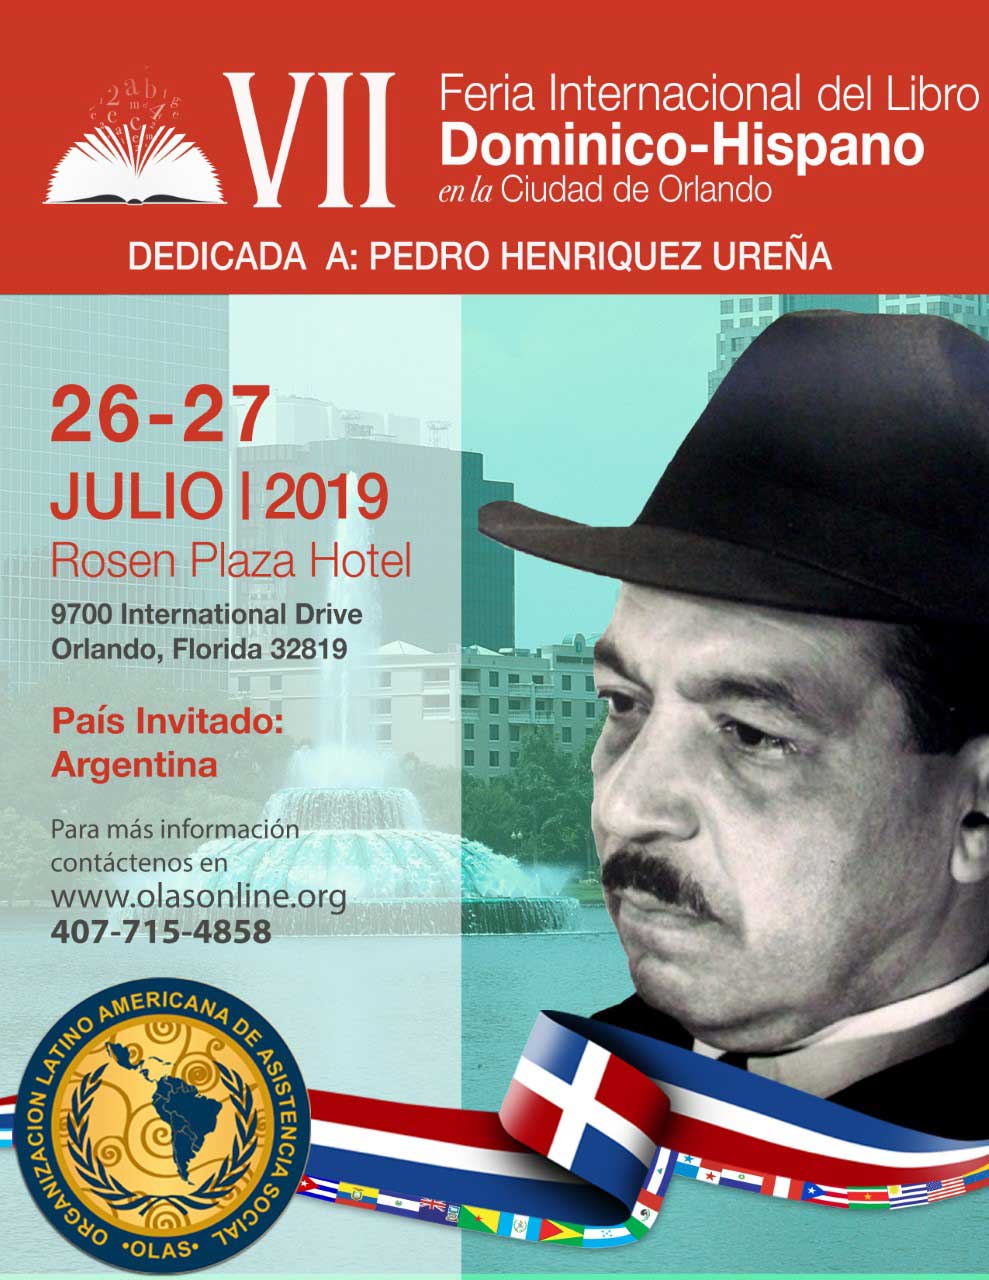 OLAS anuncia “VII Feria Internacional del Libro Dominico-Hispano en Orlando”